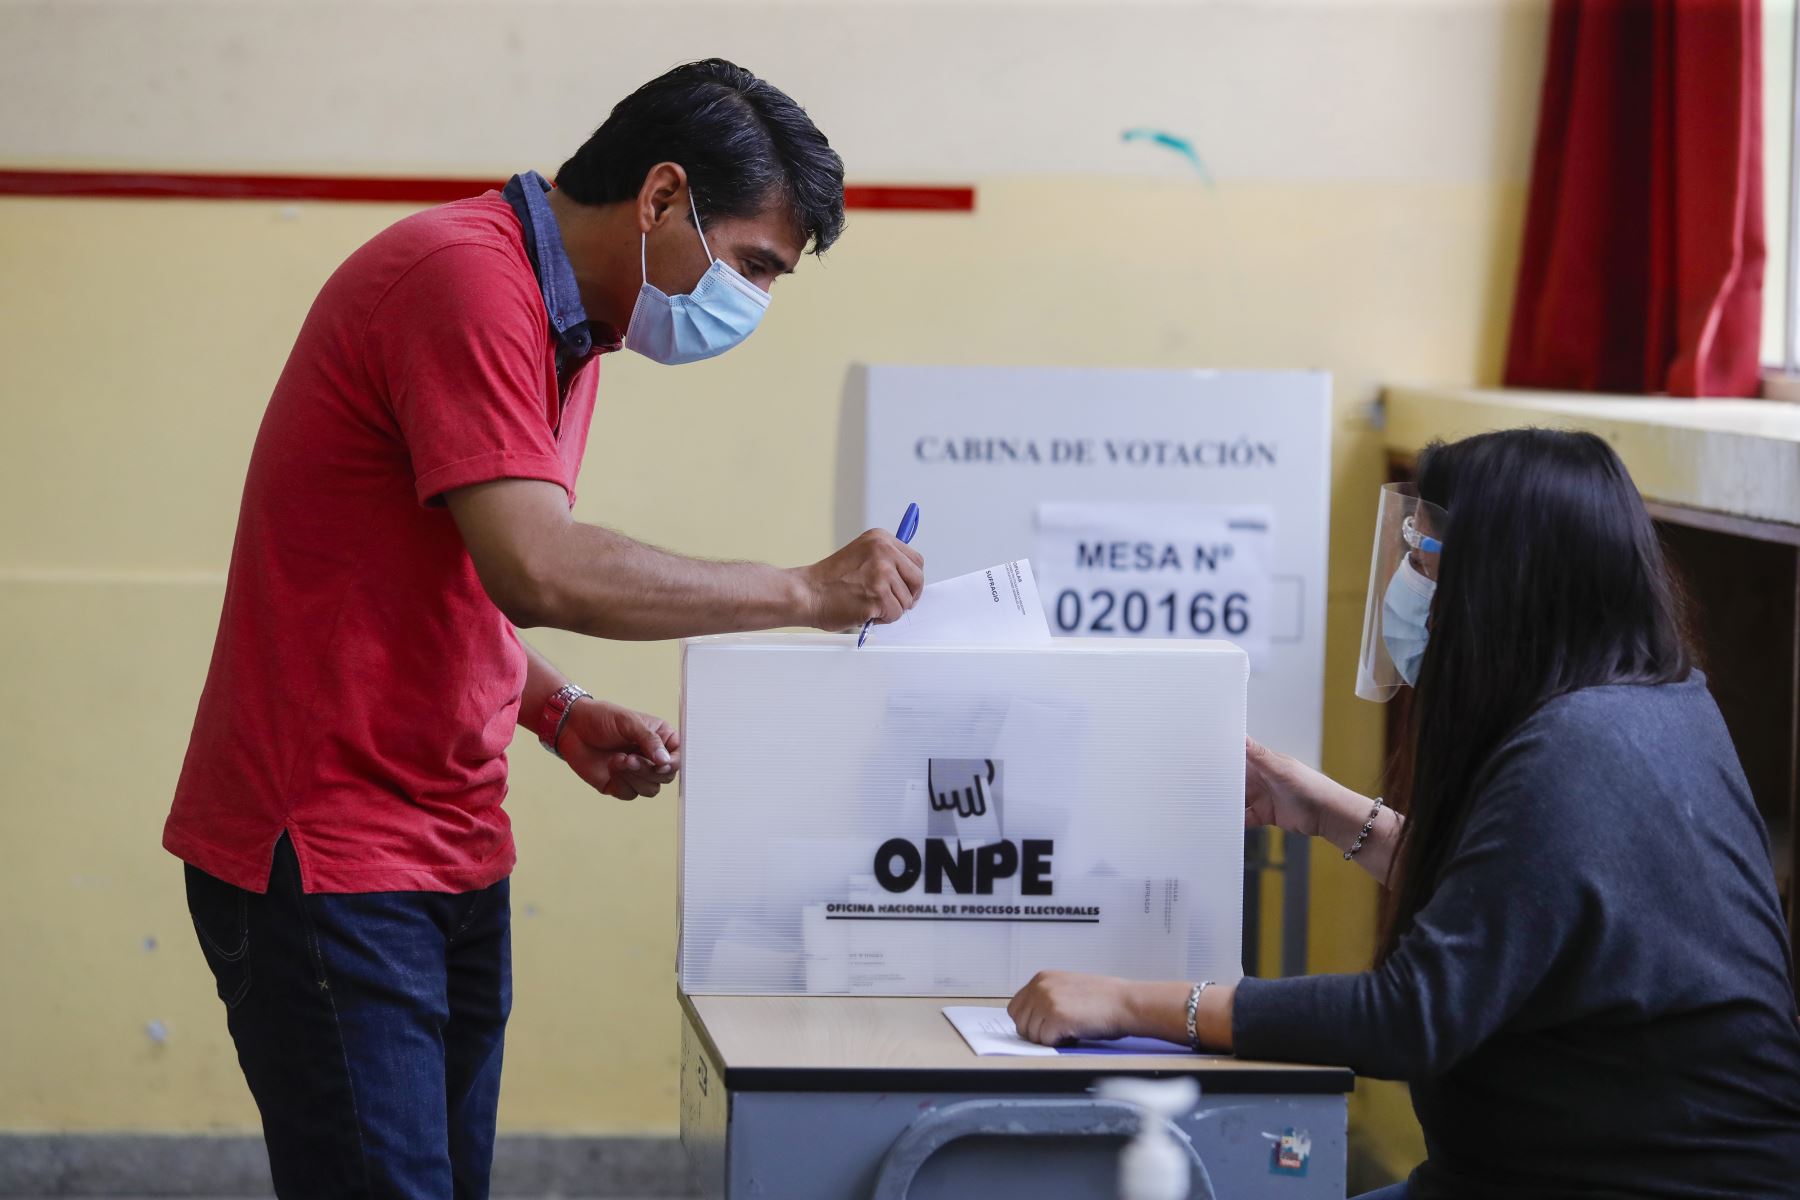 Portada: “Es posible hacer elecciones exitosas en pandemia” señala el jefe de la ONPE